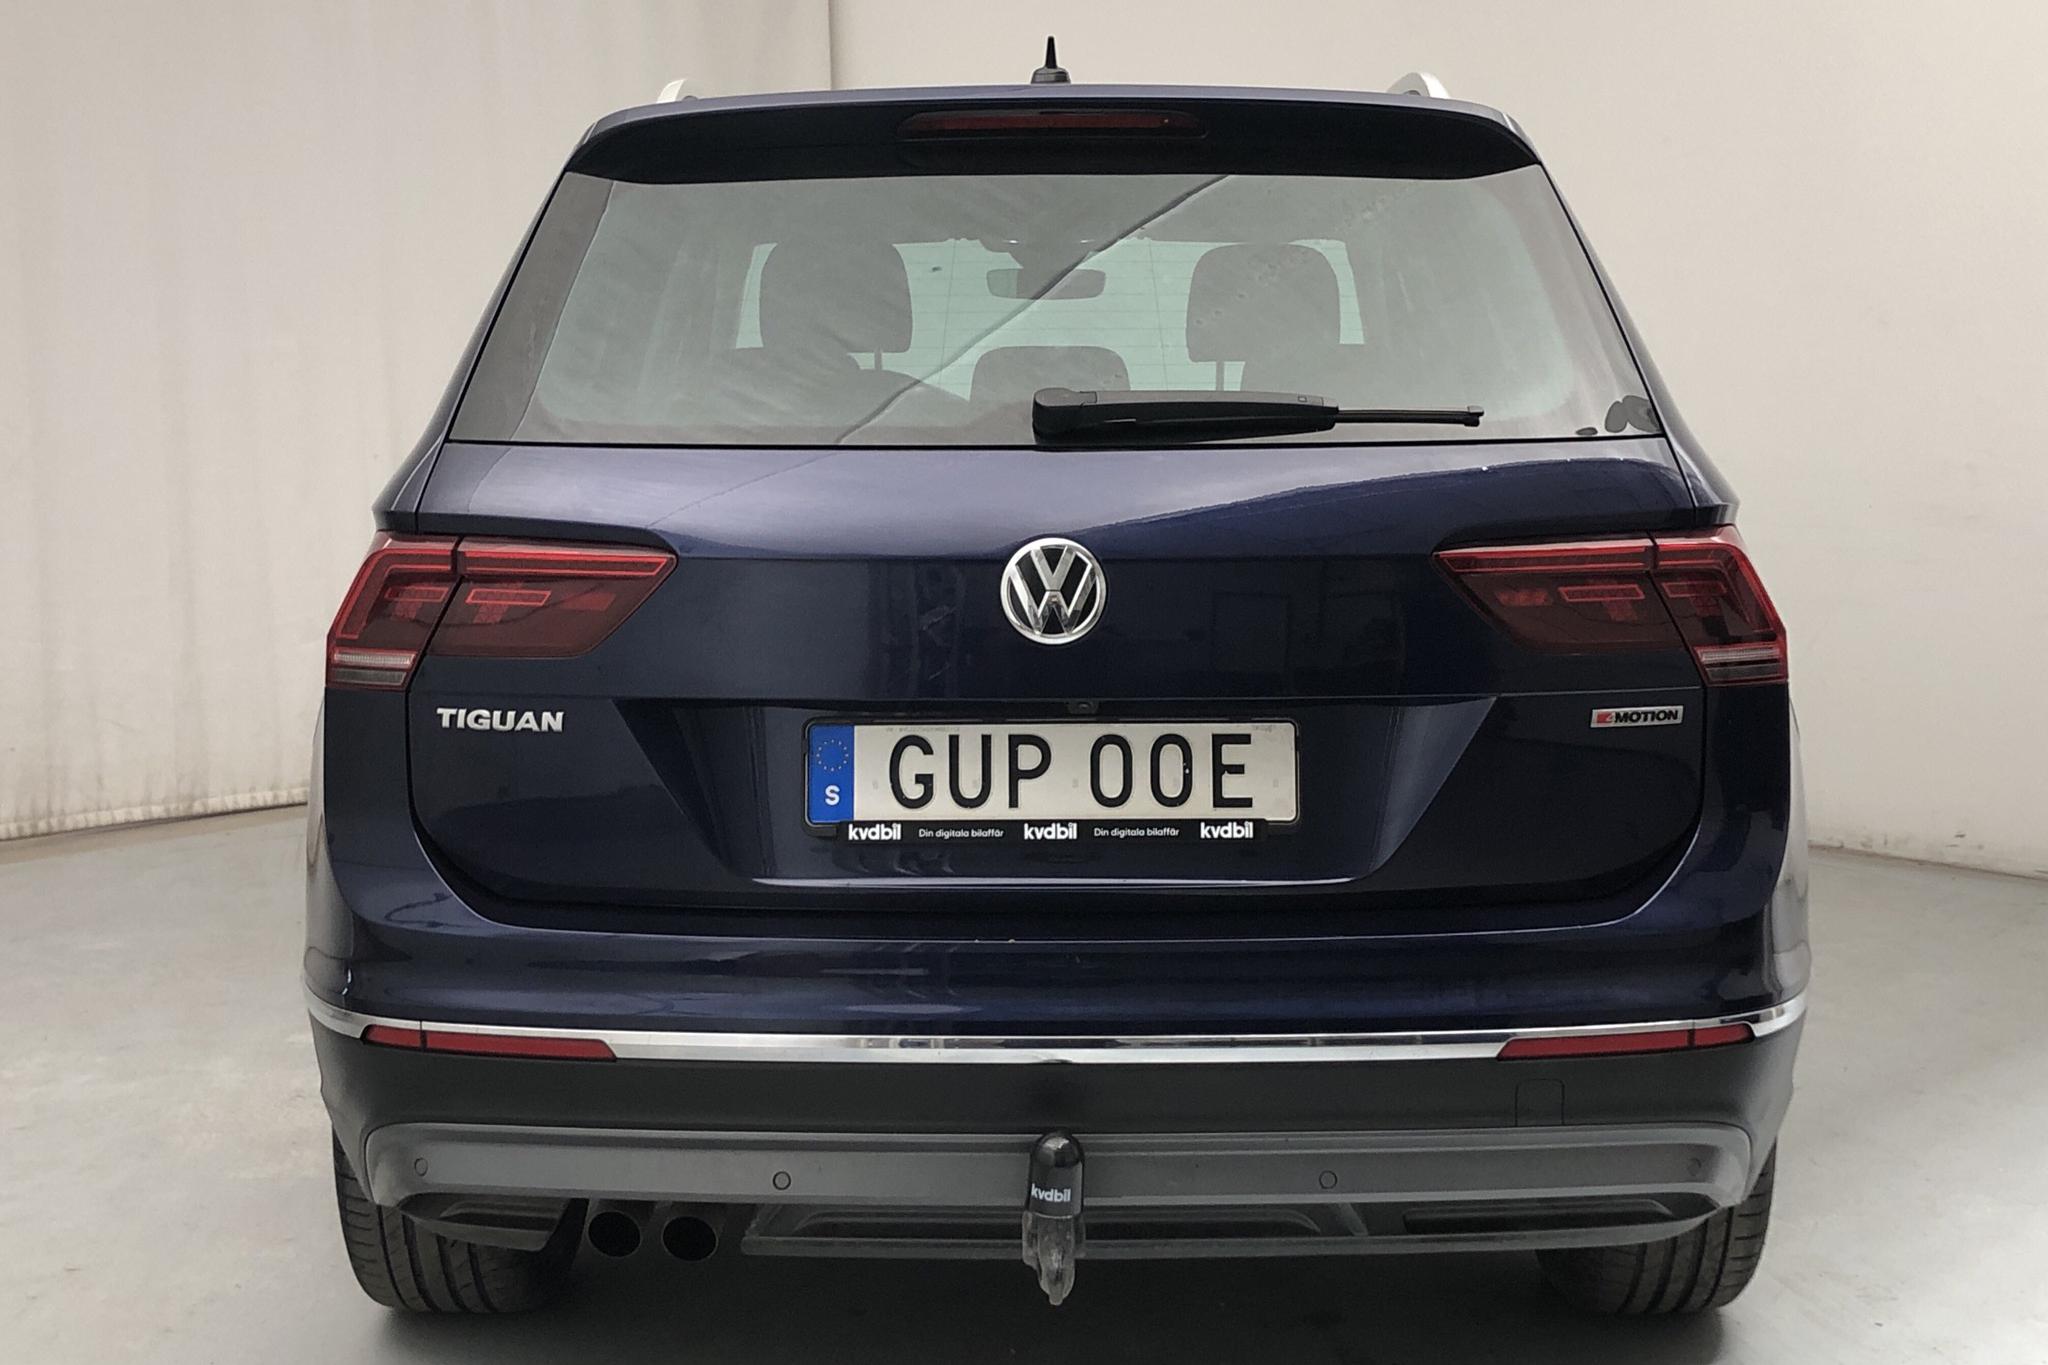 VW Tiguan 2.0 TDI 4MOTION (190hk) - 43 900 km - Automatic - blue - 2019